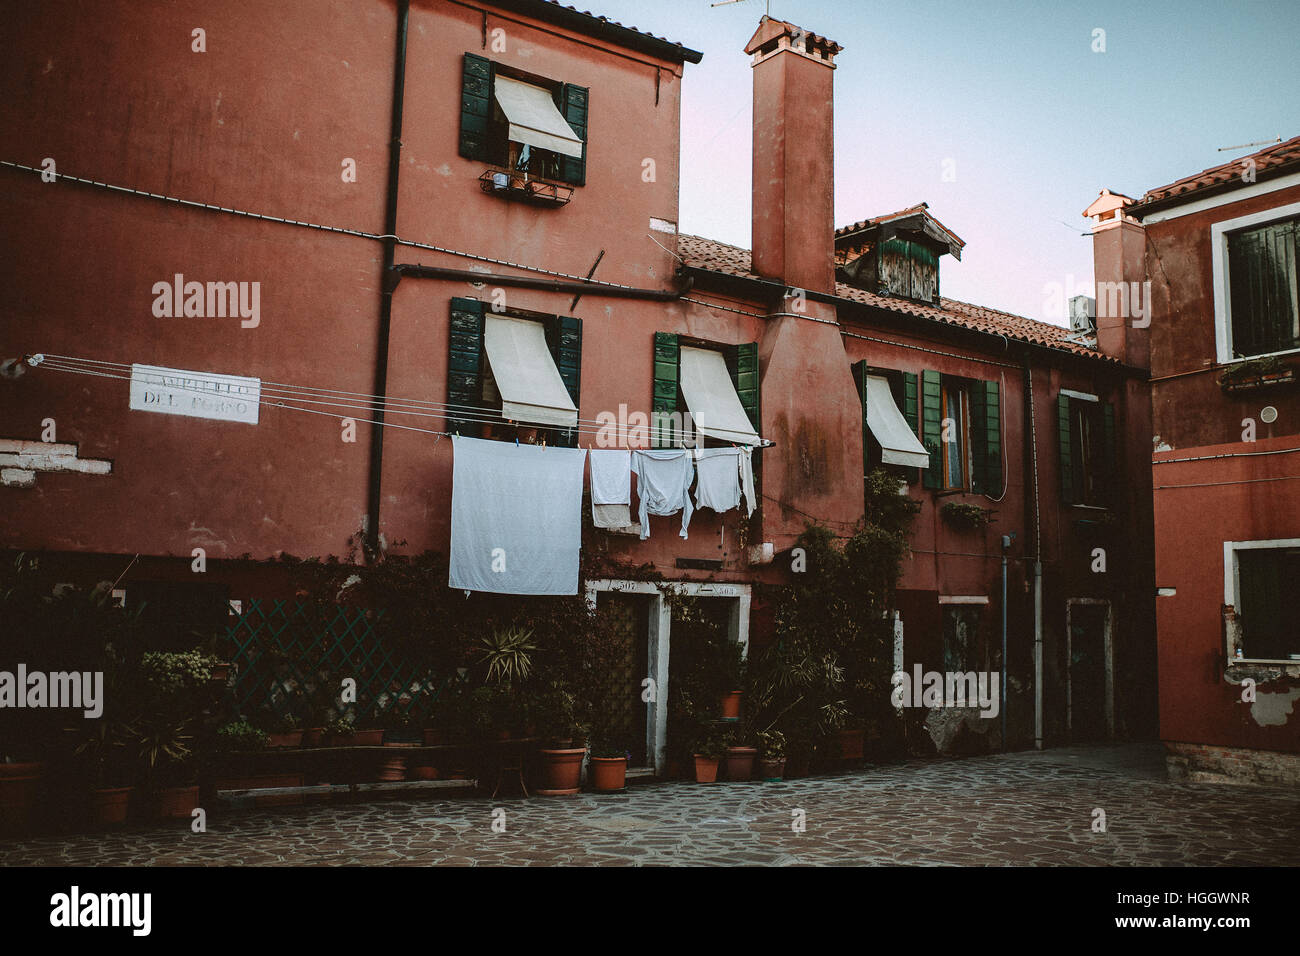 Une place avec maisons rouge de Venise, Italie. Le linge de maison est accrochée à la Windows. Banque D'Images